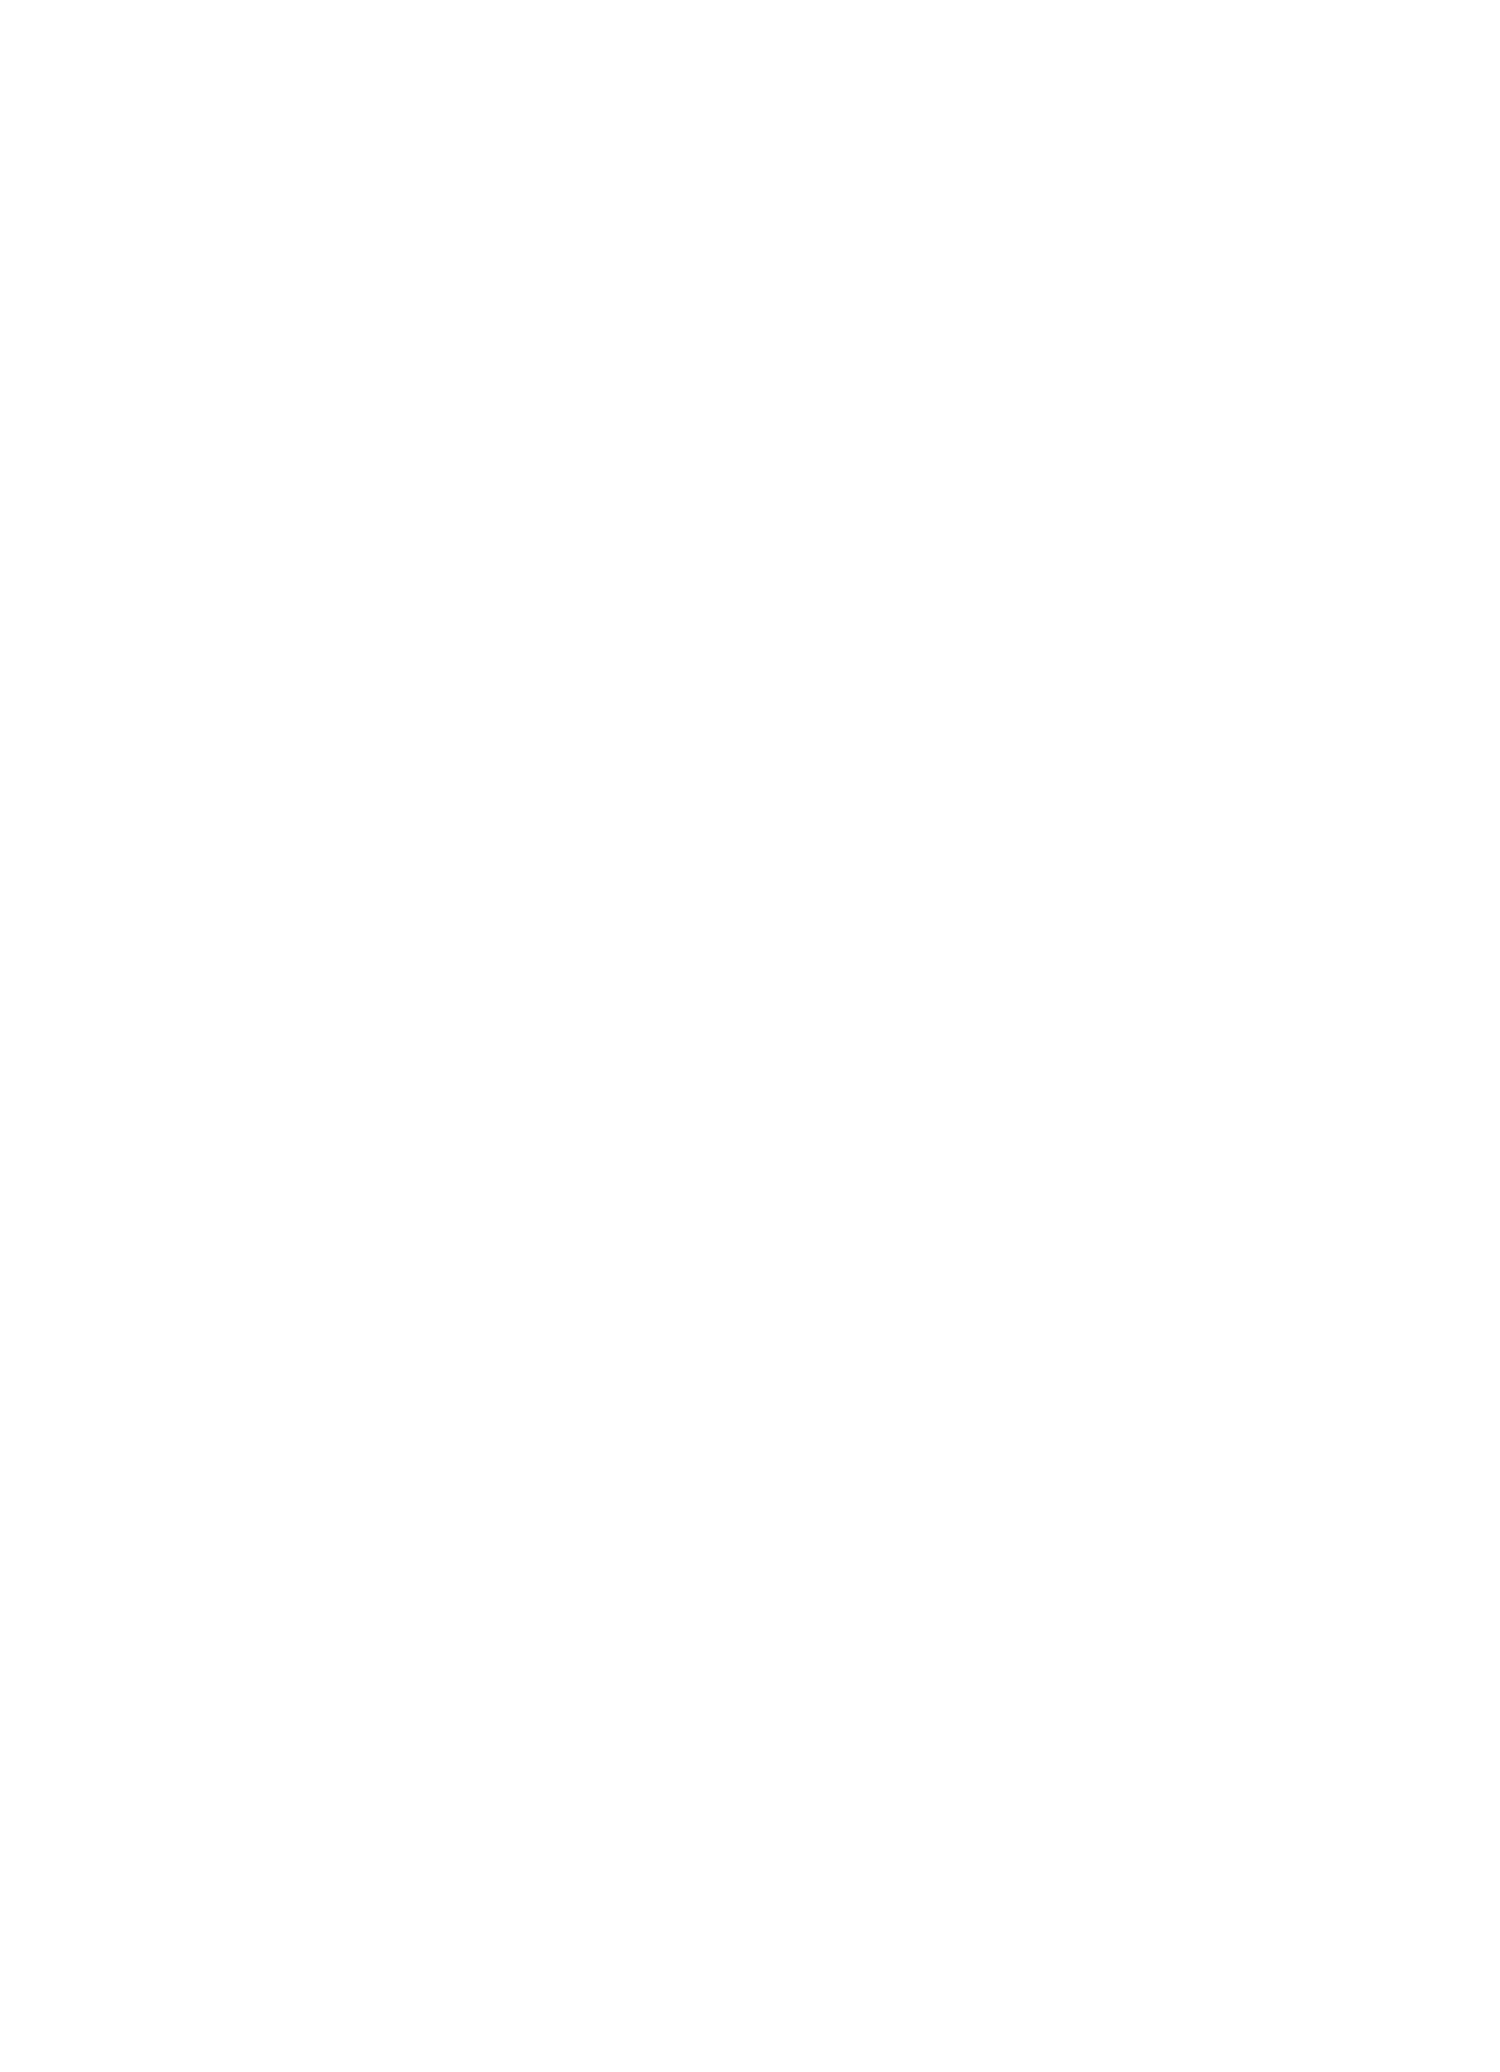 Aura Design Consultancy